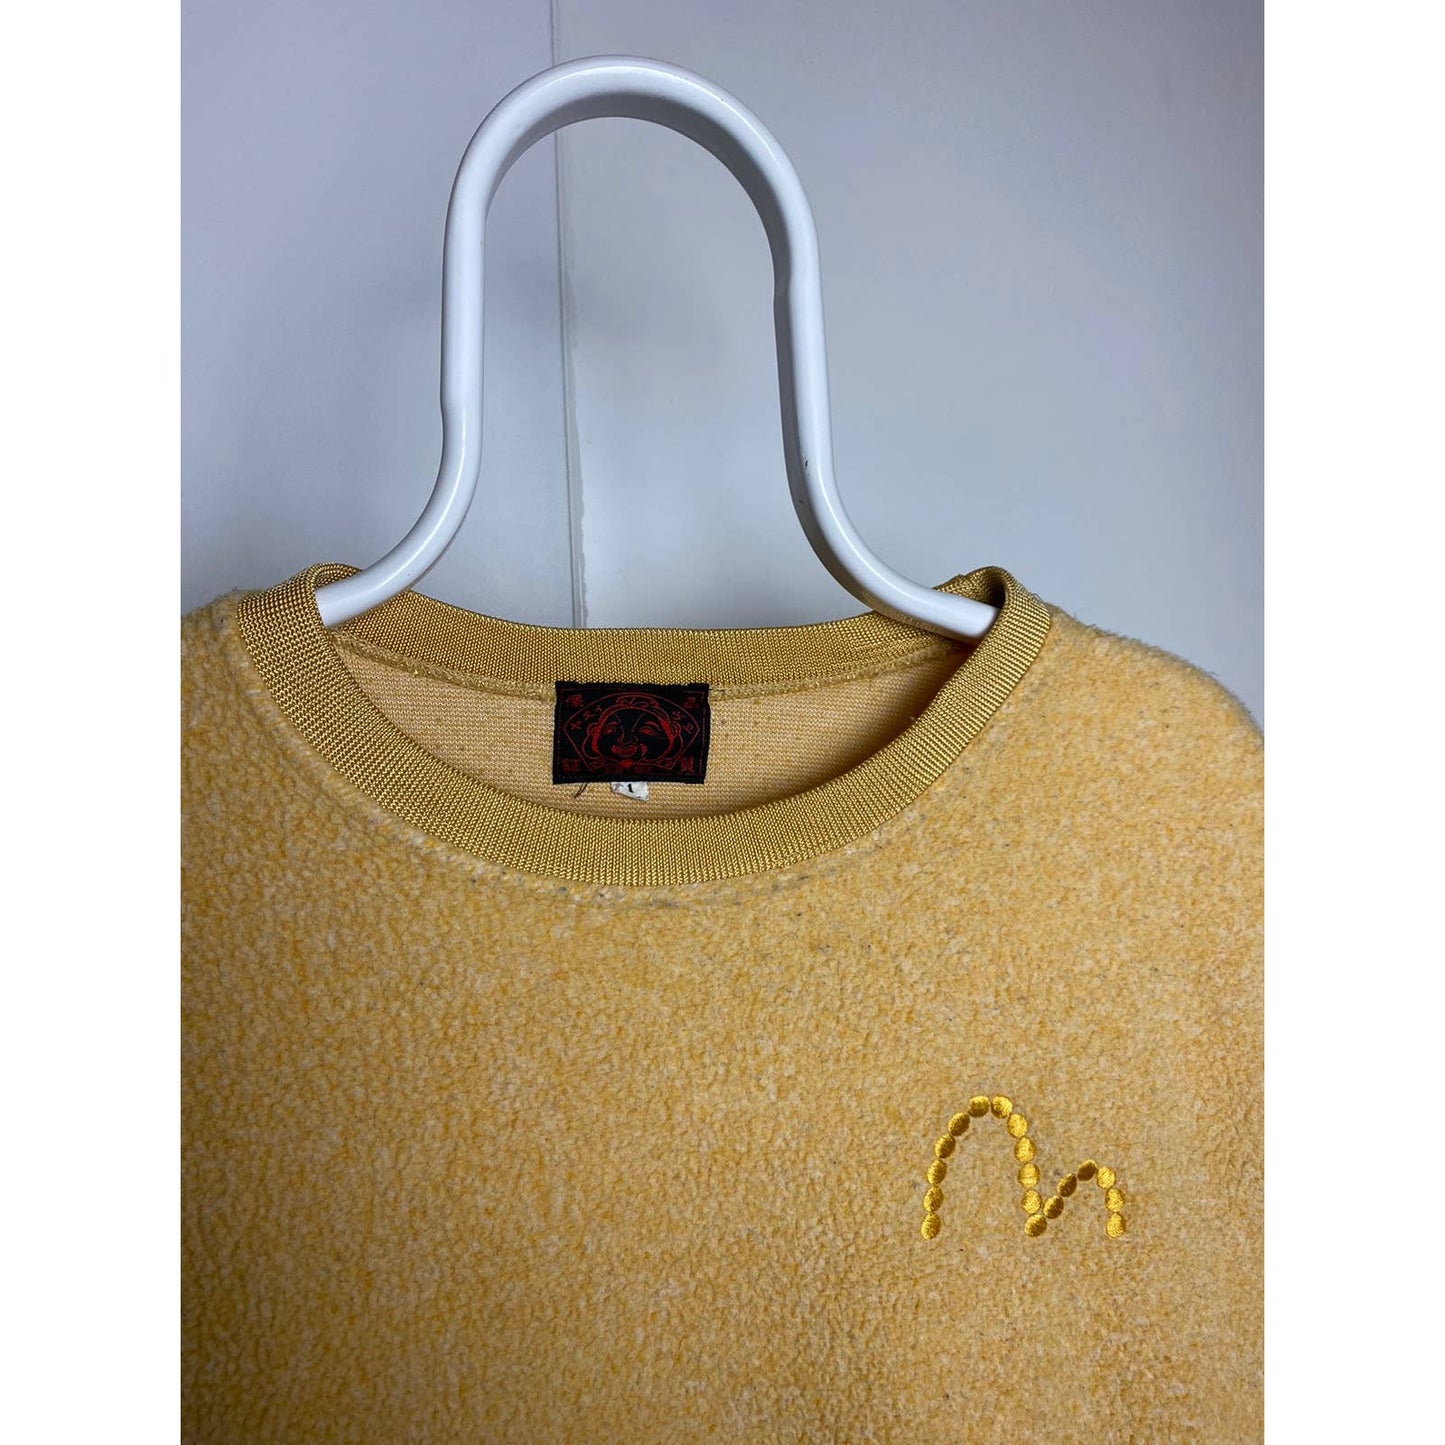 Evisu fleece sweatshirt yellow small logo vintage